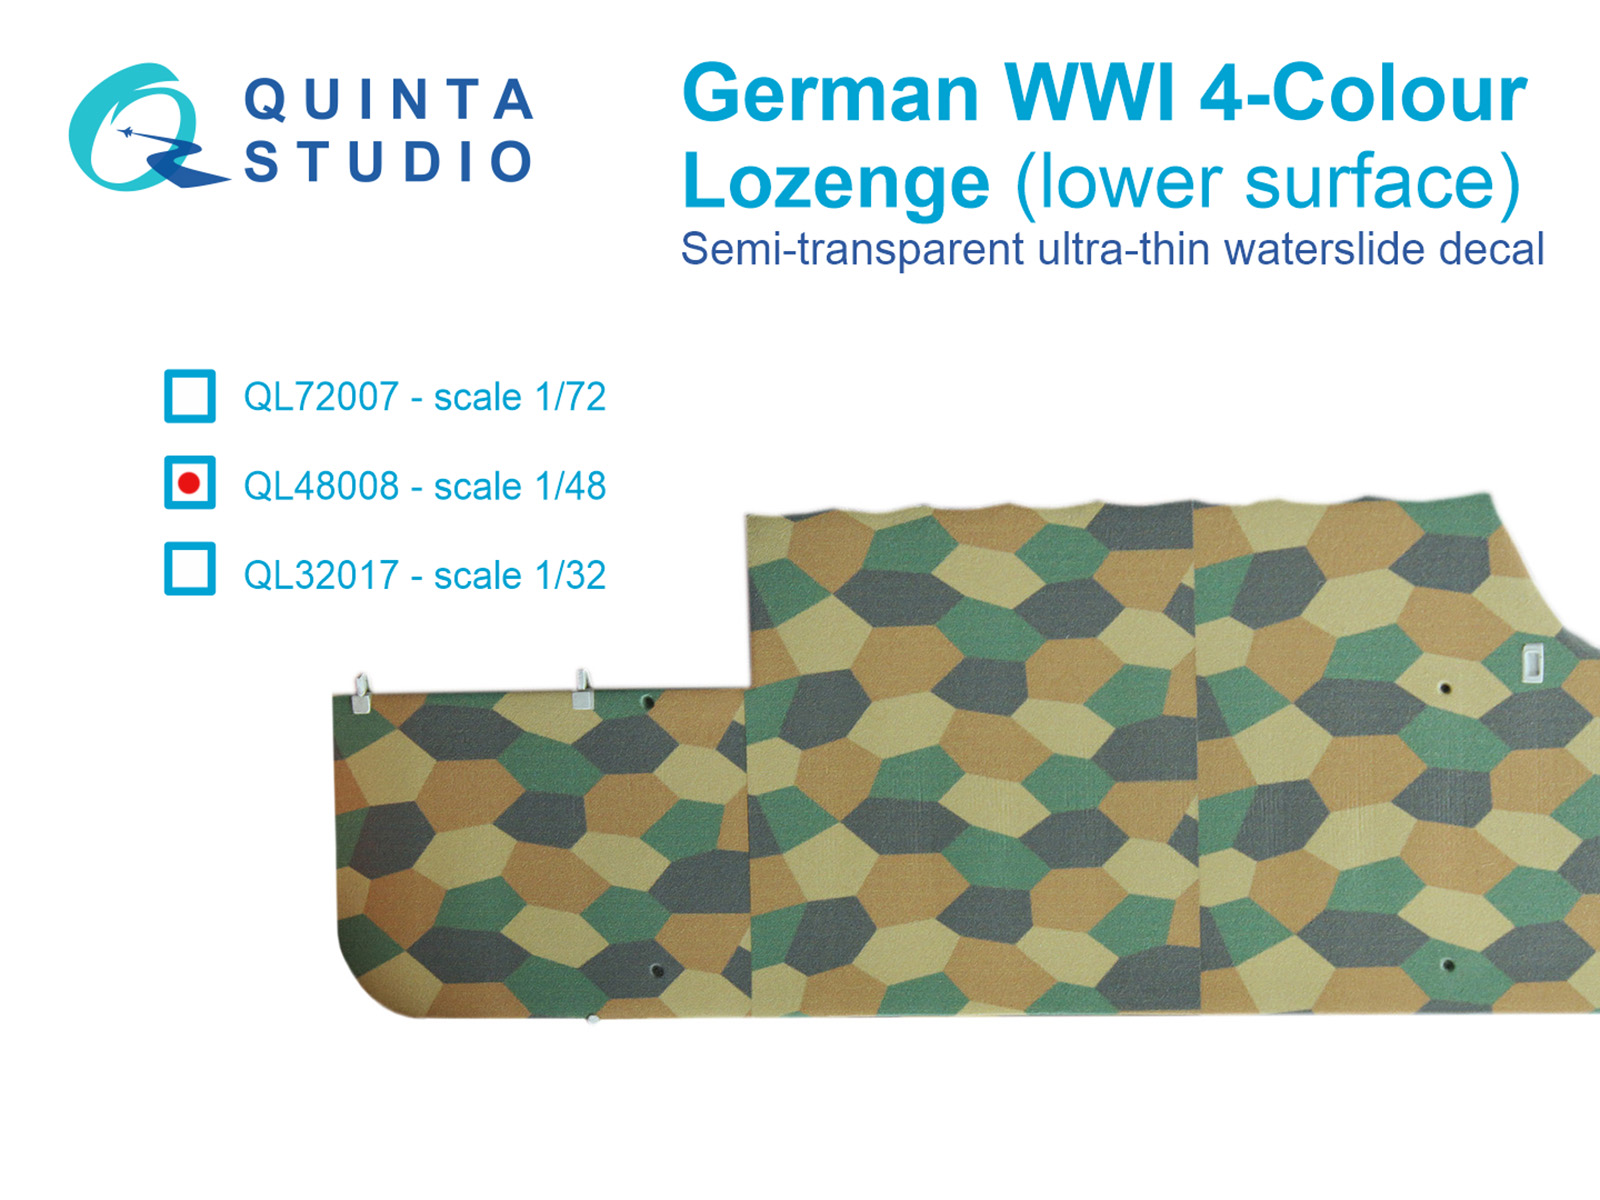 QL48008  декали  Германский WWI 4-цветный Лозенг (нижние поверхности)  (1:48)